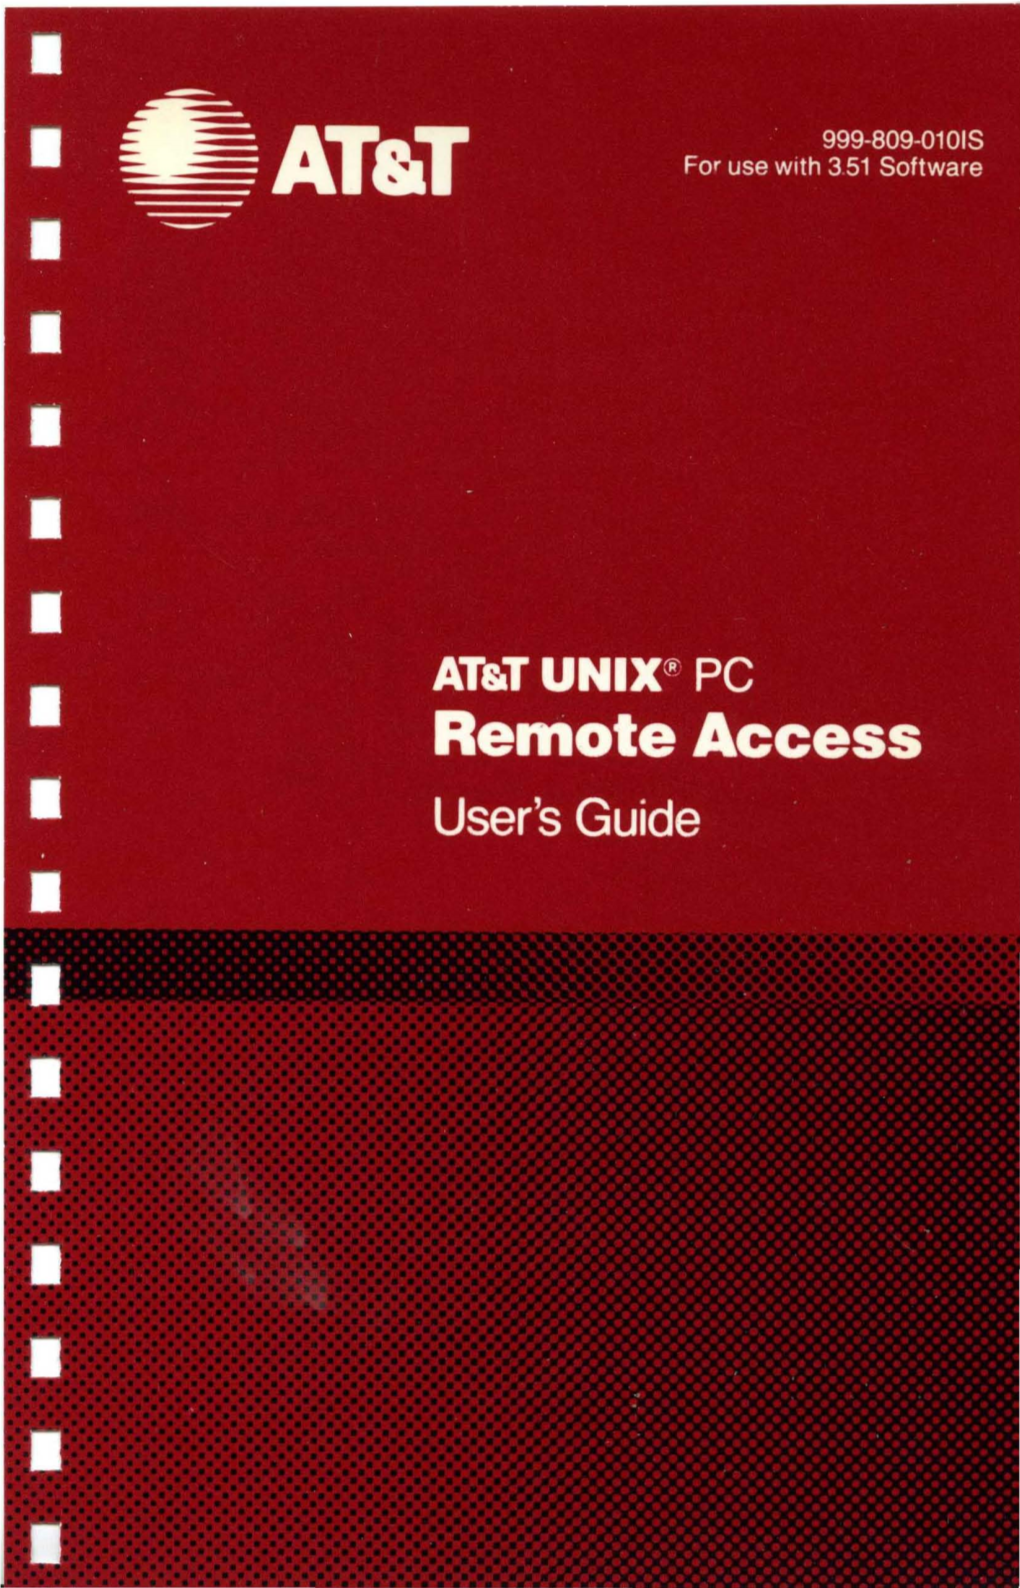 AT&T UNIX PC Remote Access User's Guide